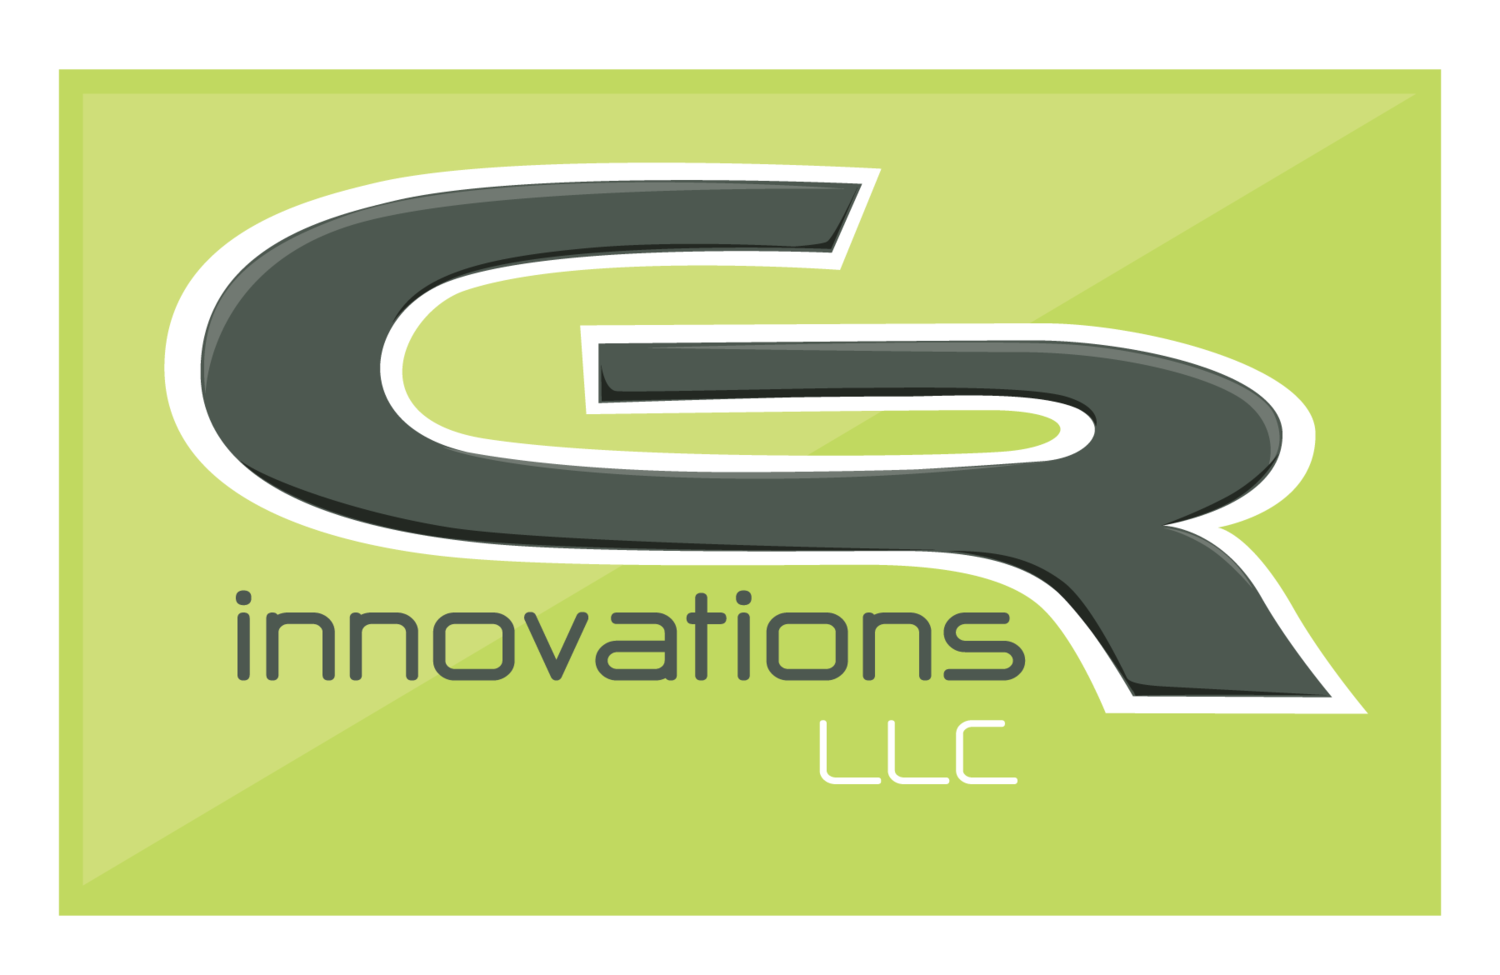 GR innovations LLC